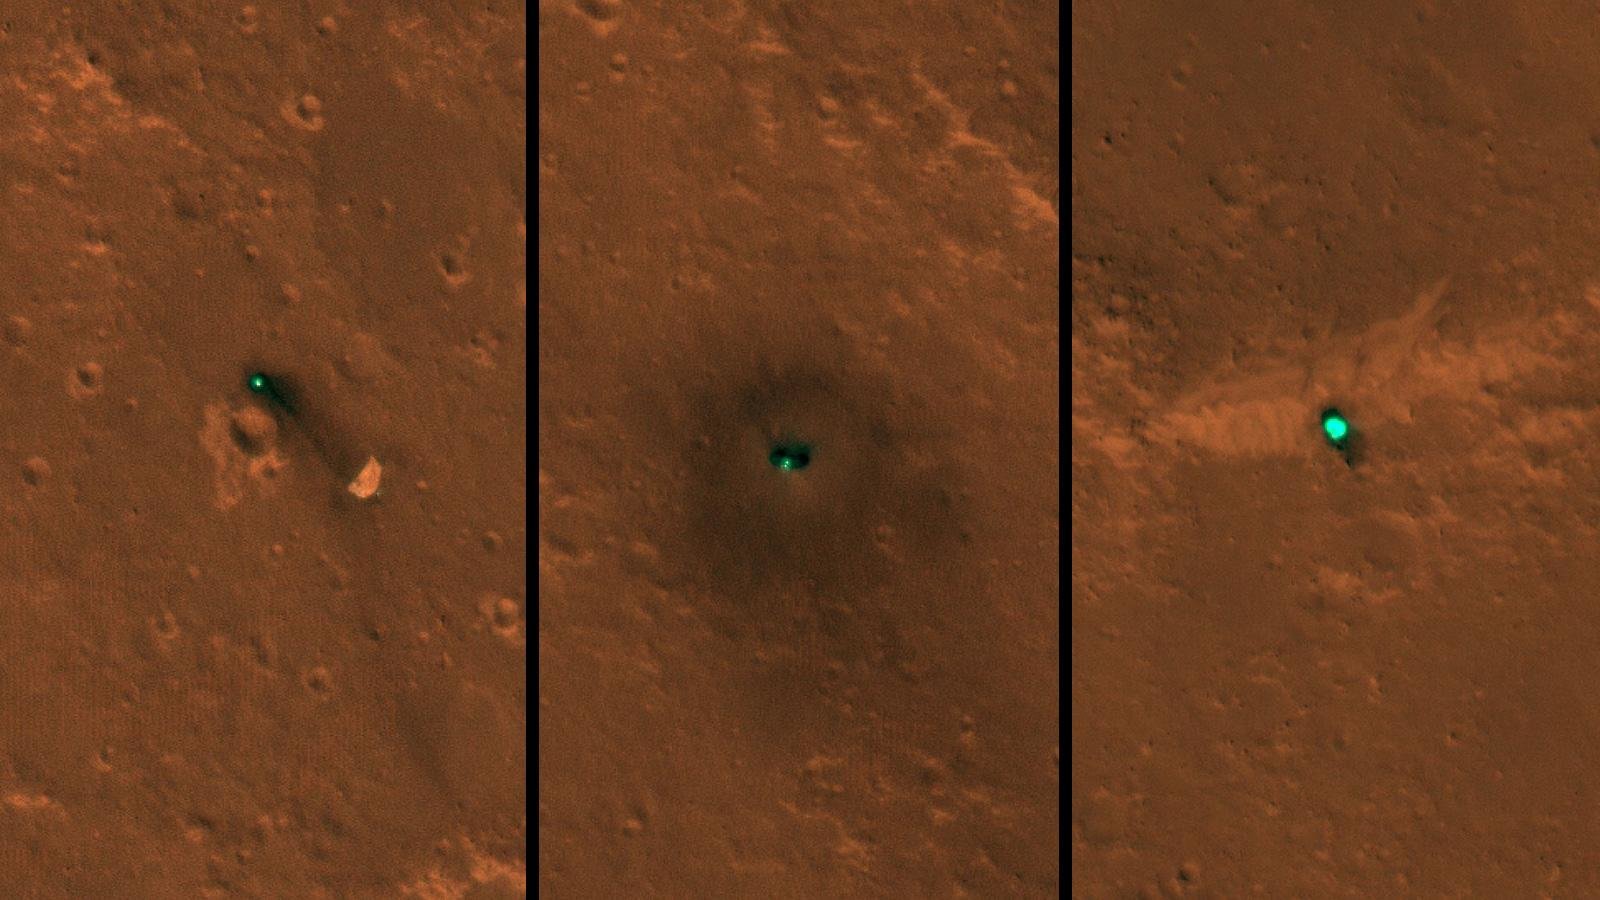 Mars makine Insight girdim ilk görüntüleri uzaydan